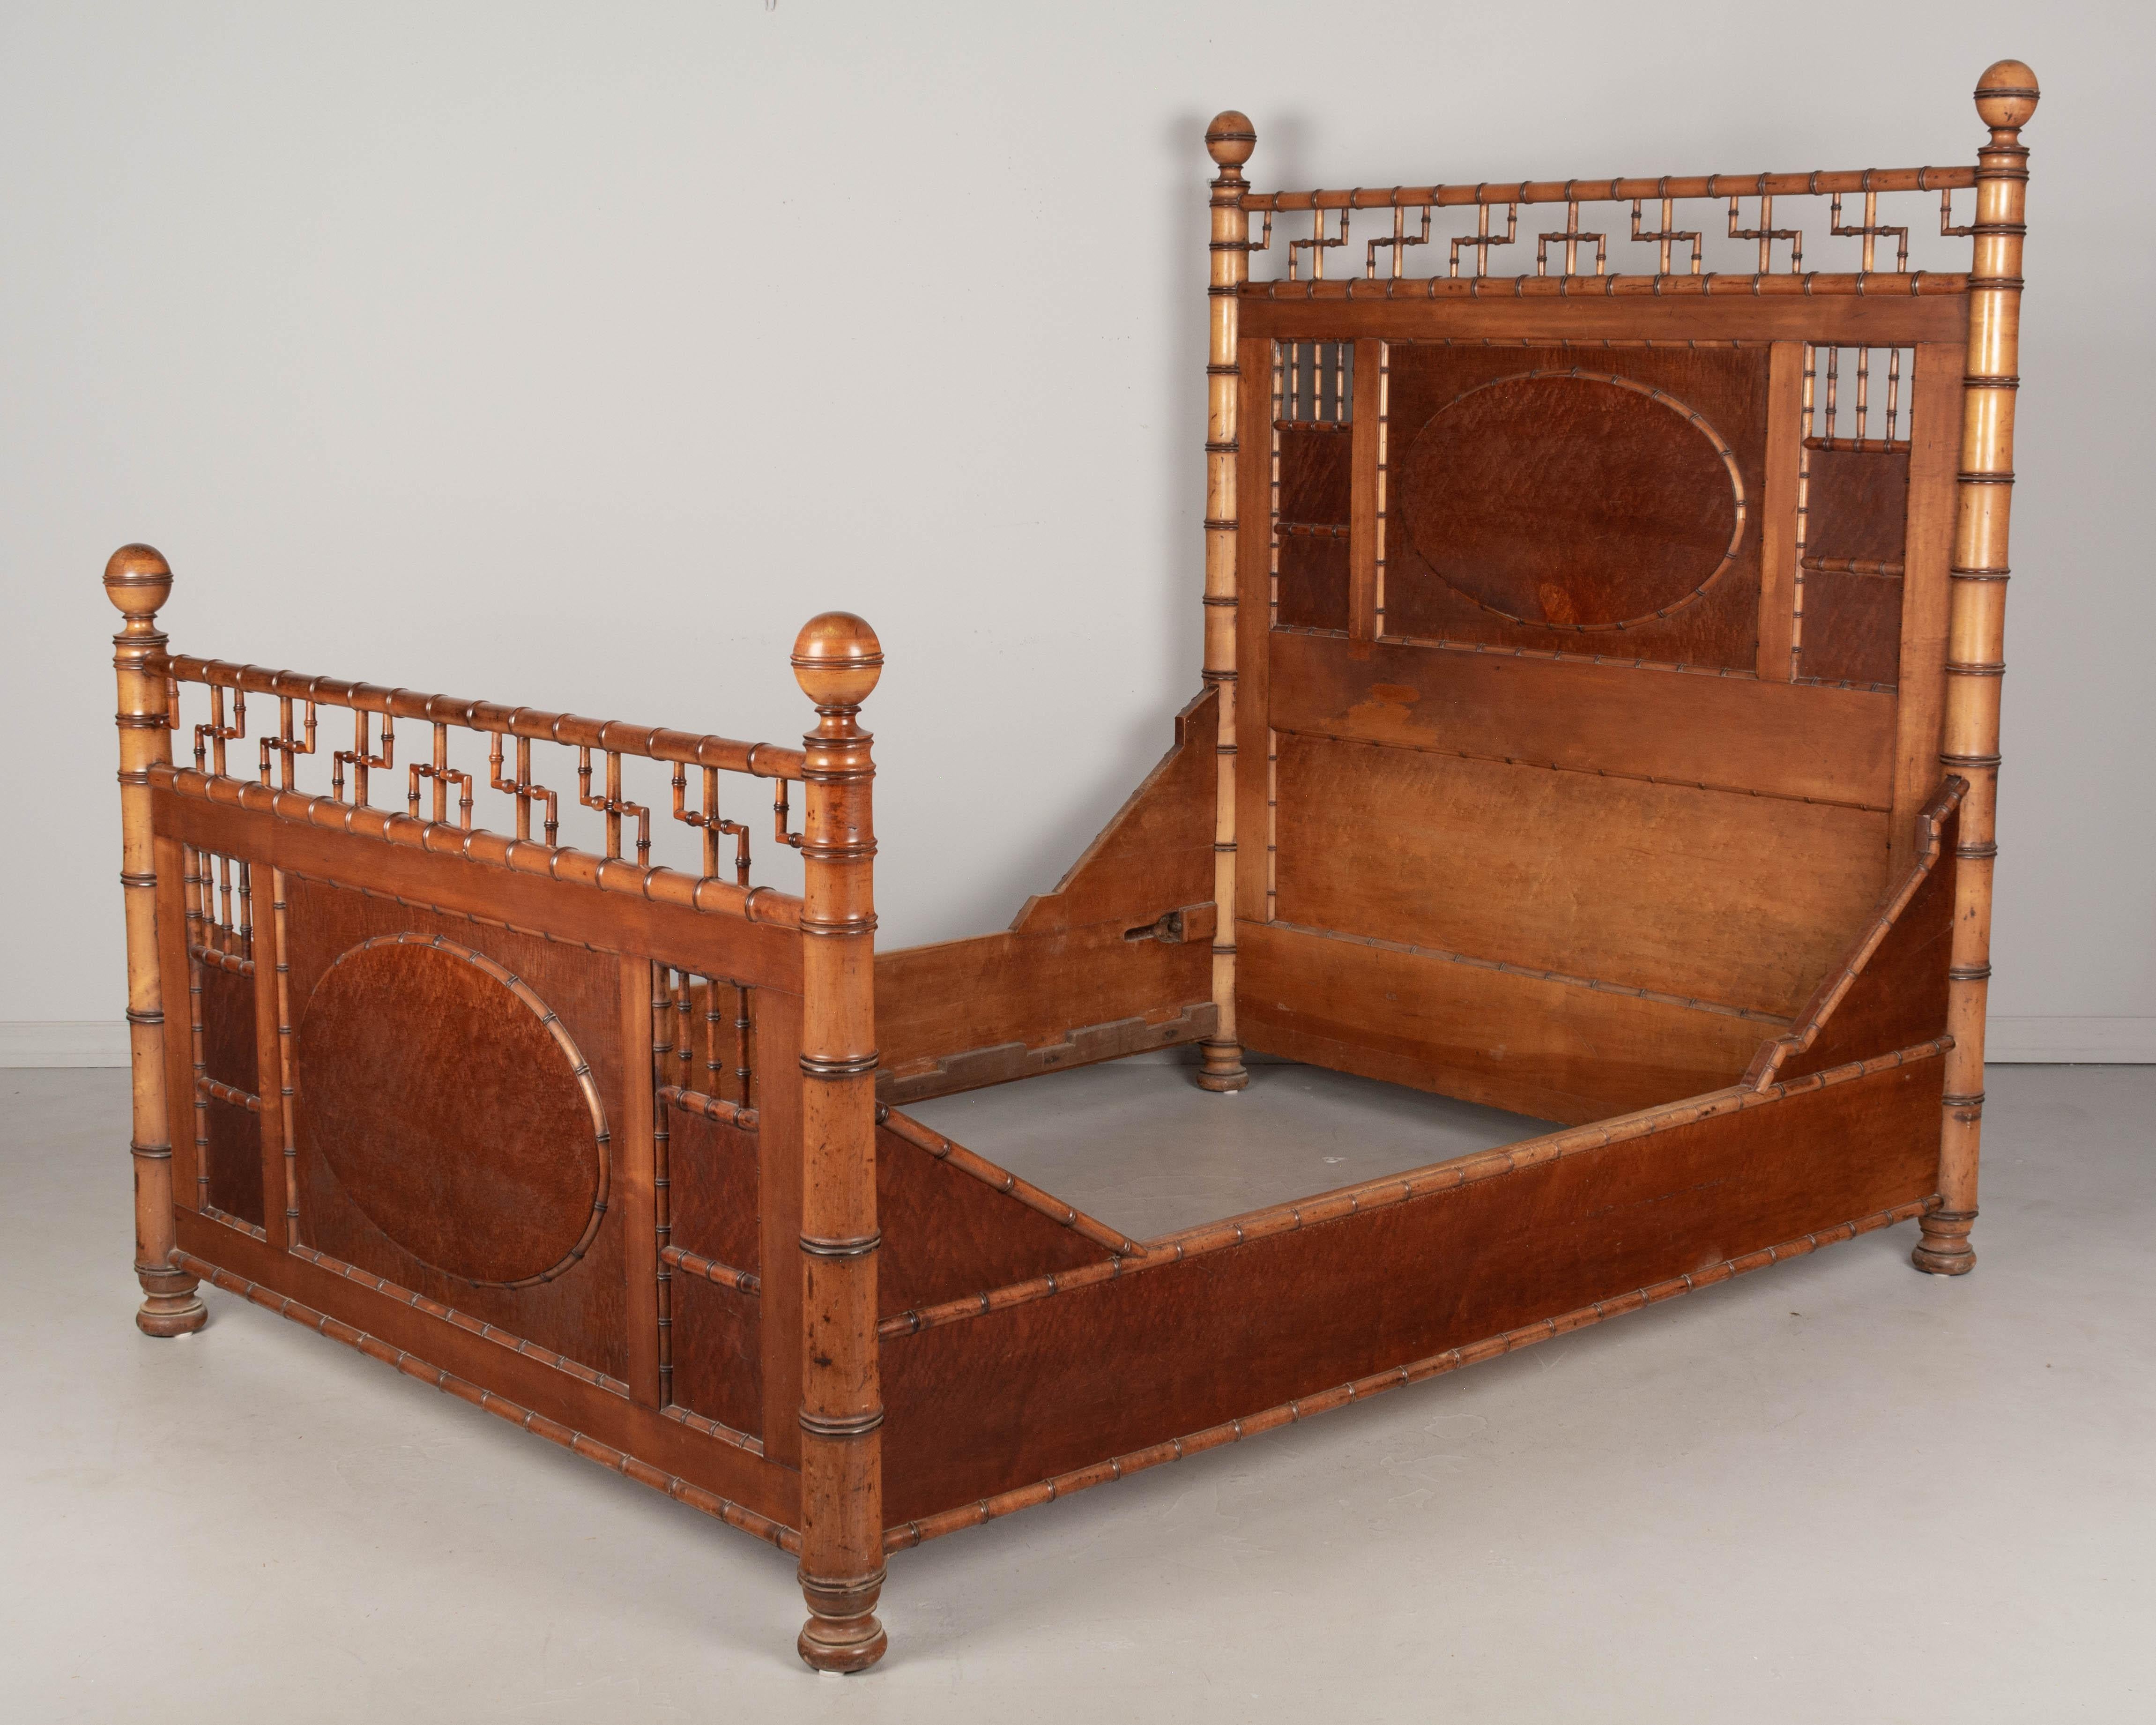 Armazón de cama de imitación de bambú del Movimiento Estético Victoriano estadounidense del siglo XIX, de R.J. Horner & Co., hecho de cerezo macizo y arce ojo de perdiz. Todo original con acabado teñido de ámbar y bonita pátina envejecida. Esta cama